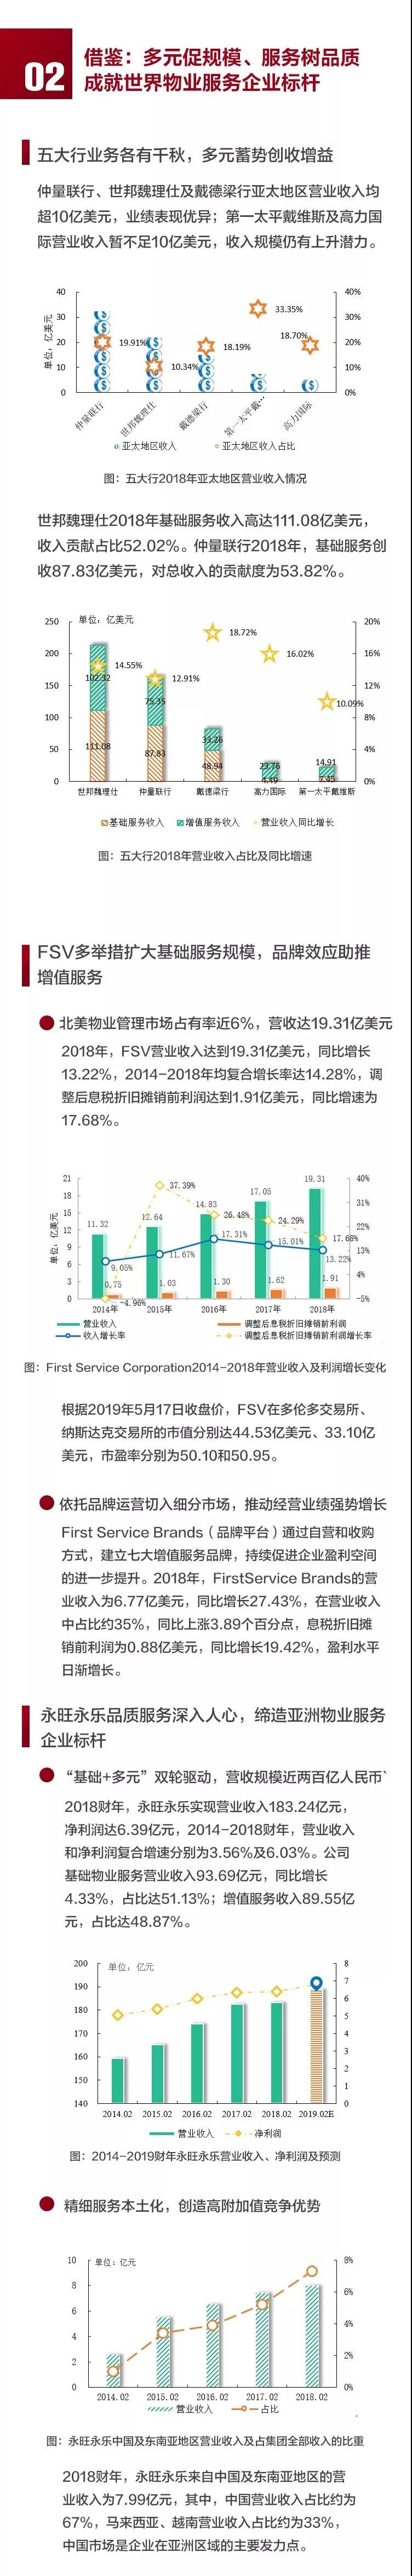 2019中国物业服务百强企业排行榜重磅发布 看看你家物业上榜没?